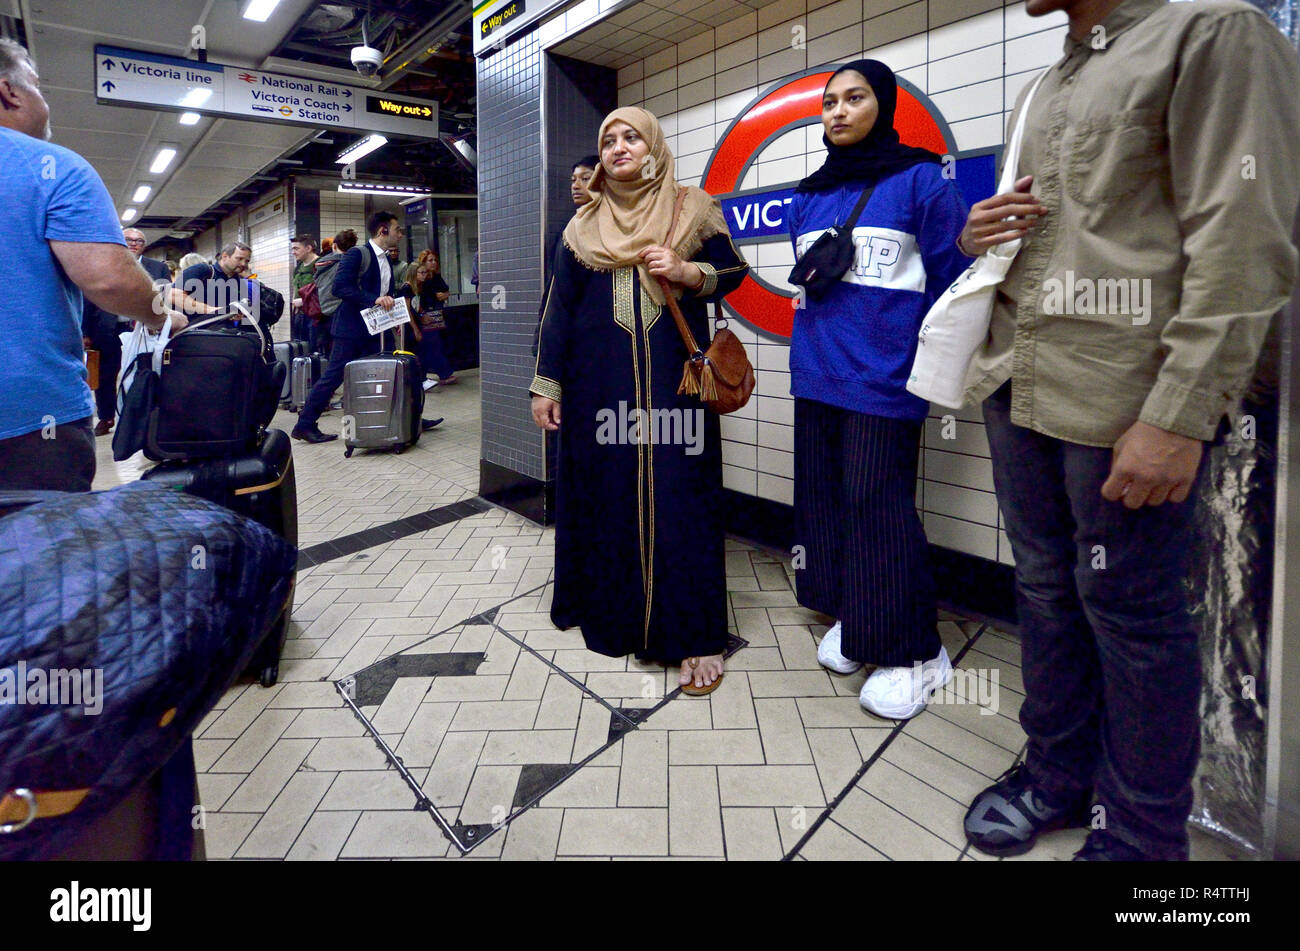 London Underground station, London, England, UK. Stock Photo